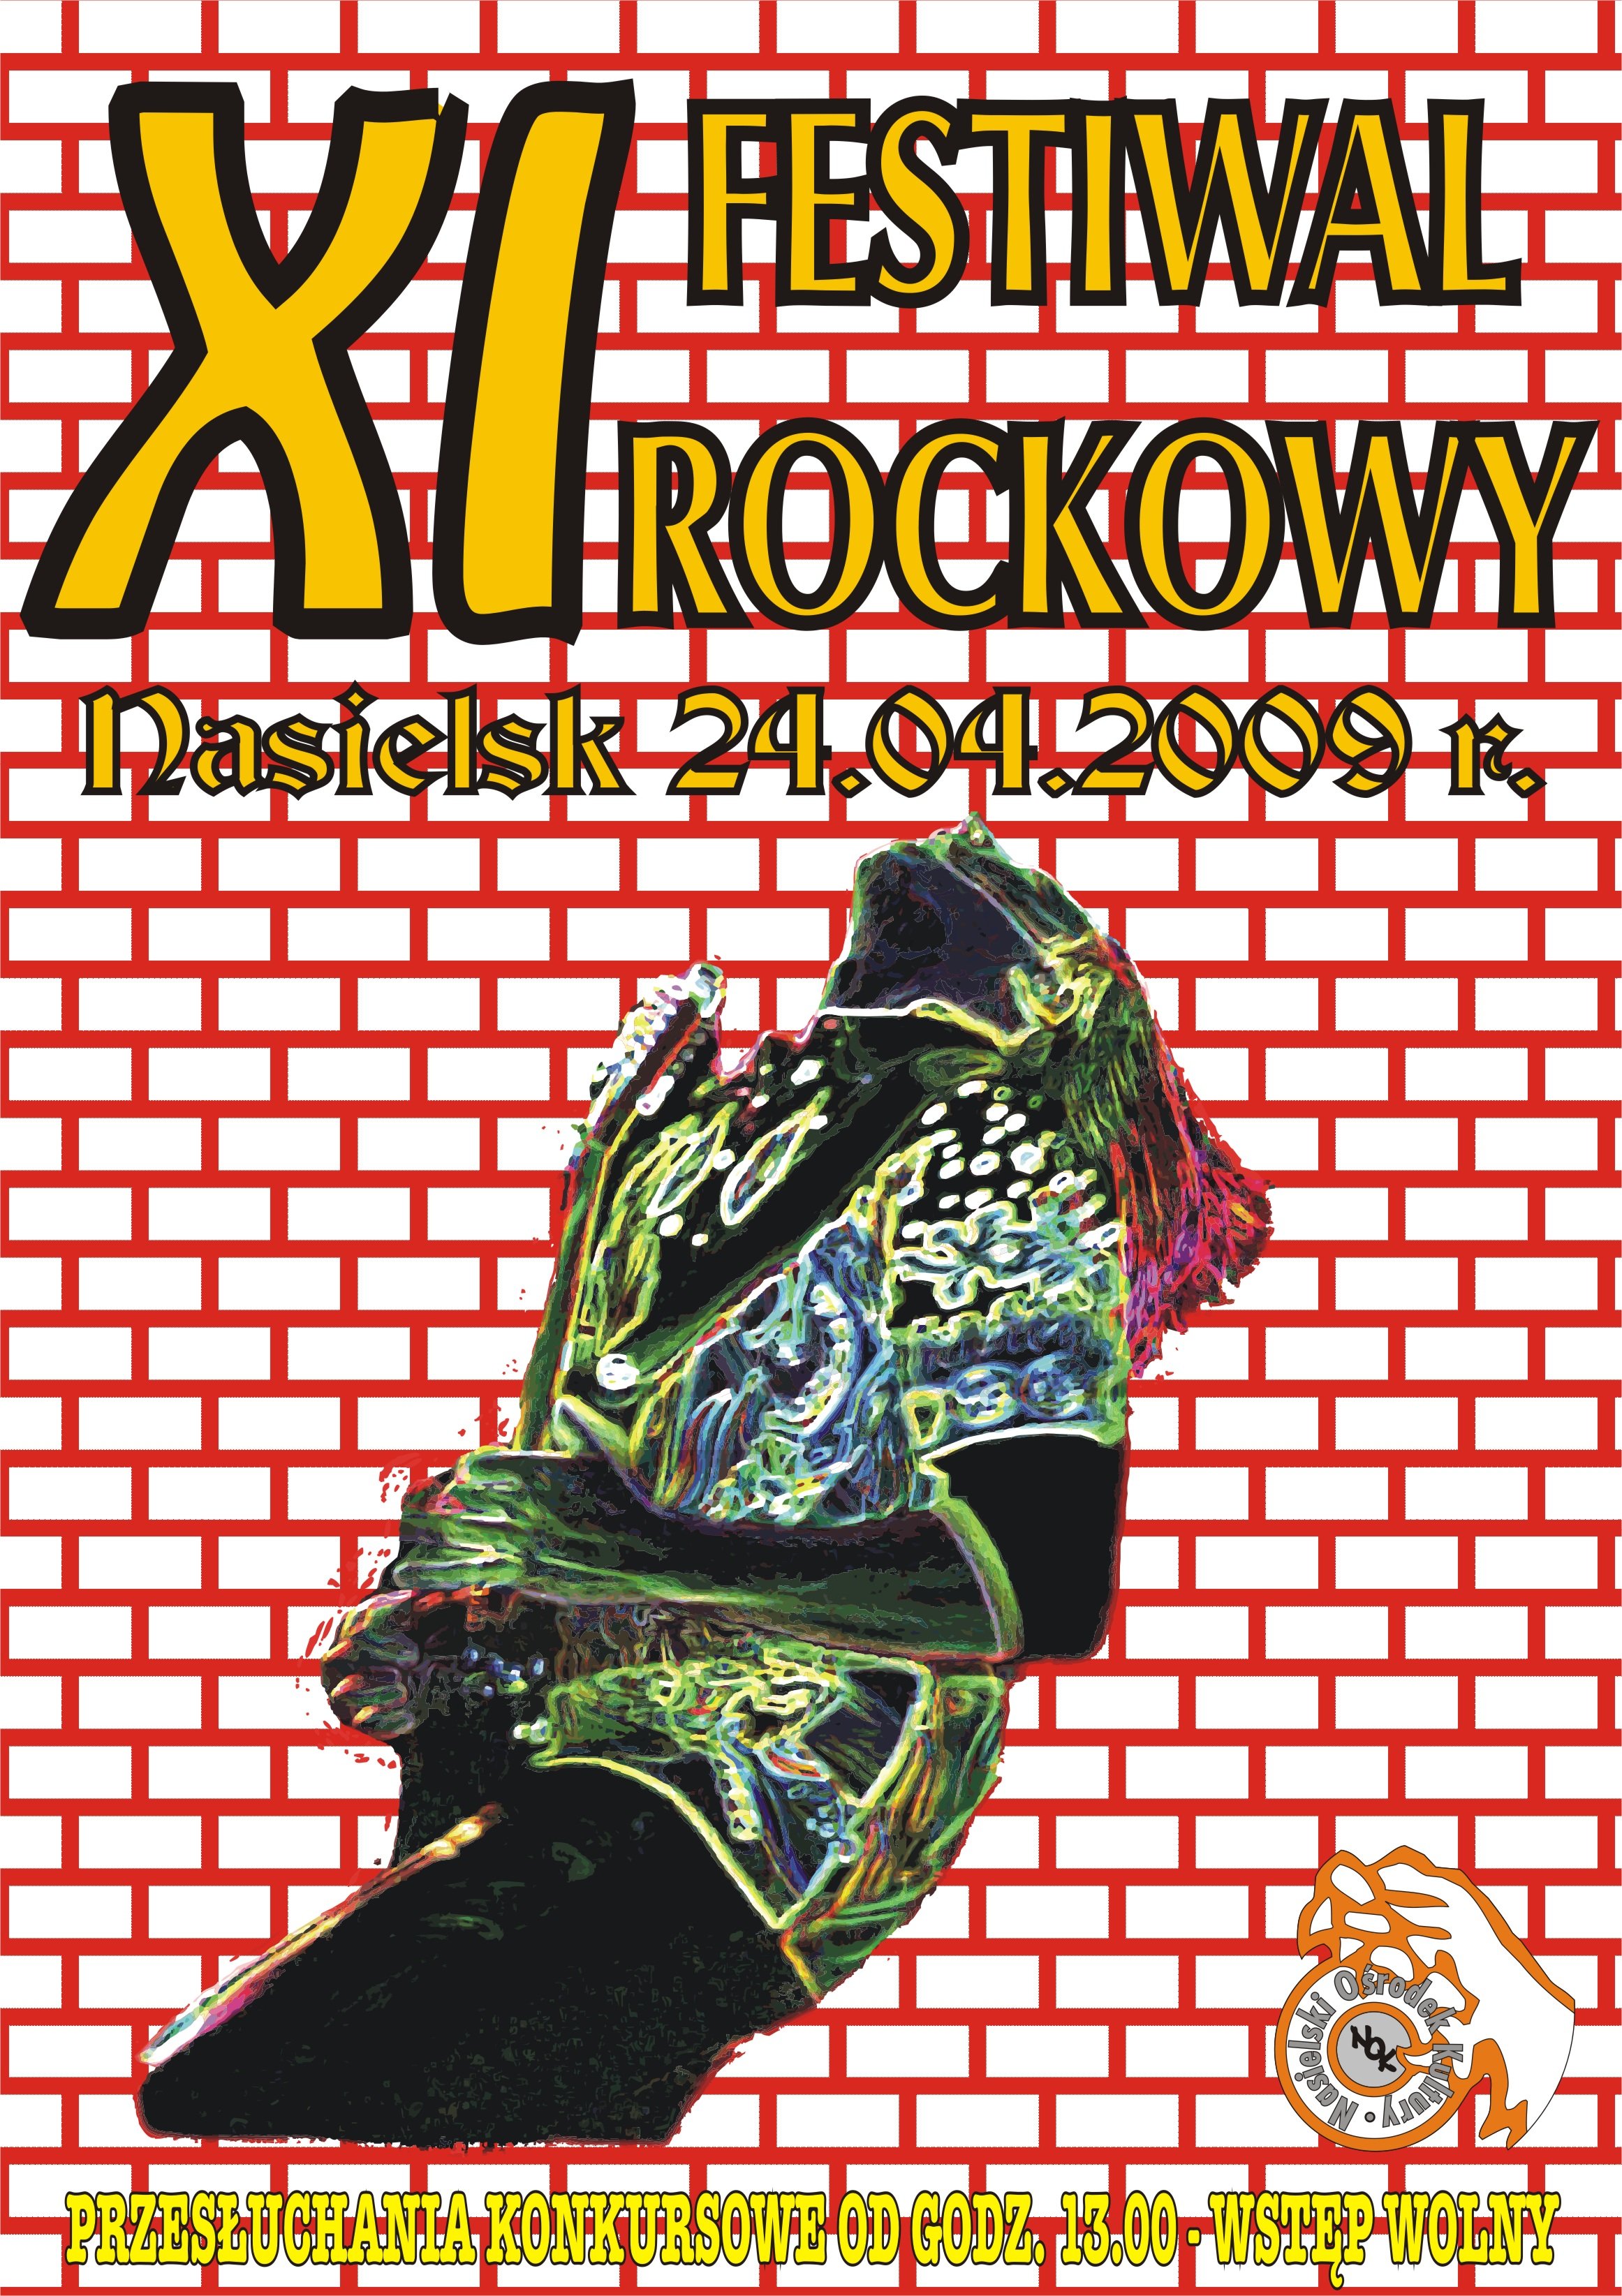 XI Festiwal Rockowy en Nasielski Ośrodek Kultury (Nasielsk) el 24 Abr 2009  | Last.fm